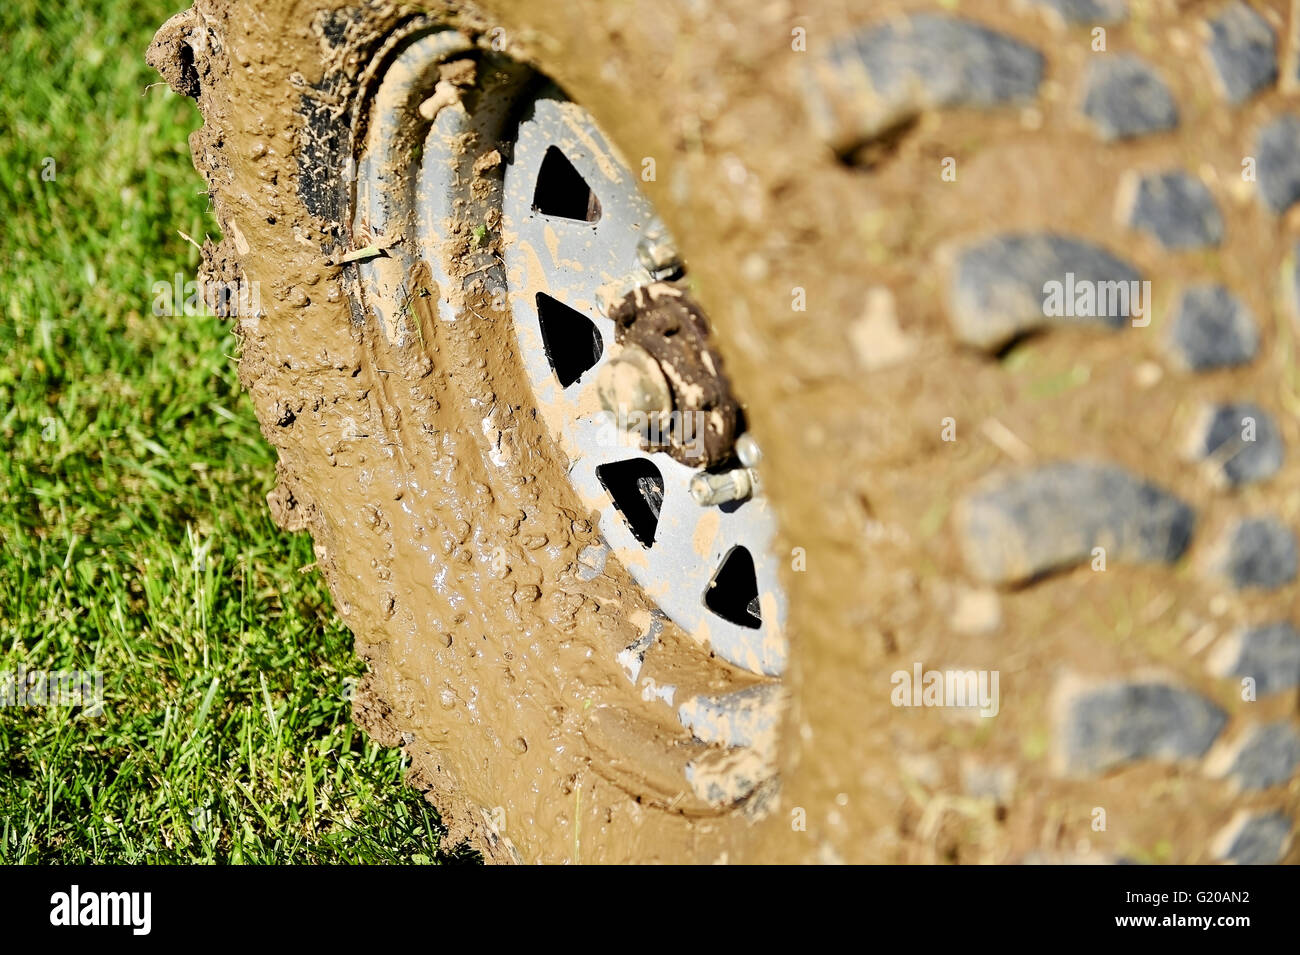 Gros véhicule off road pneu et roue pleine de boue sur l'herbe verte Banque D'Images